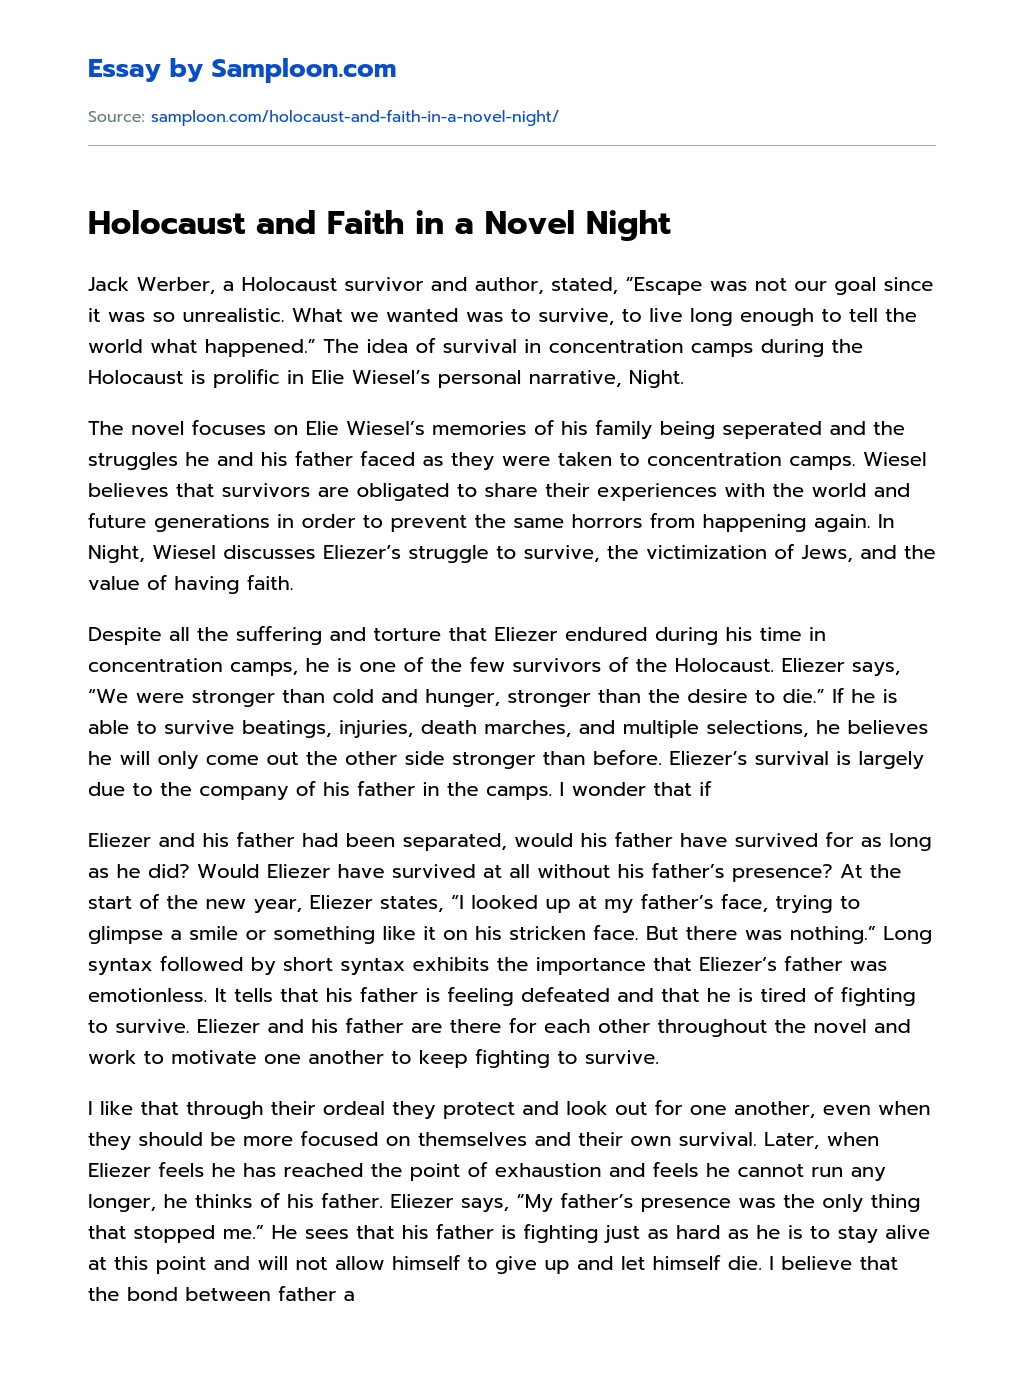 Holocaust and Faith in a Novel Night essay